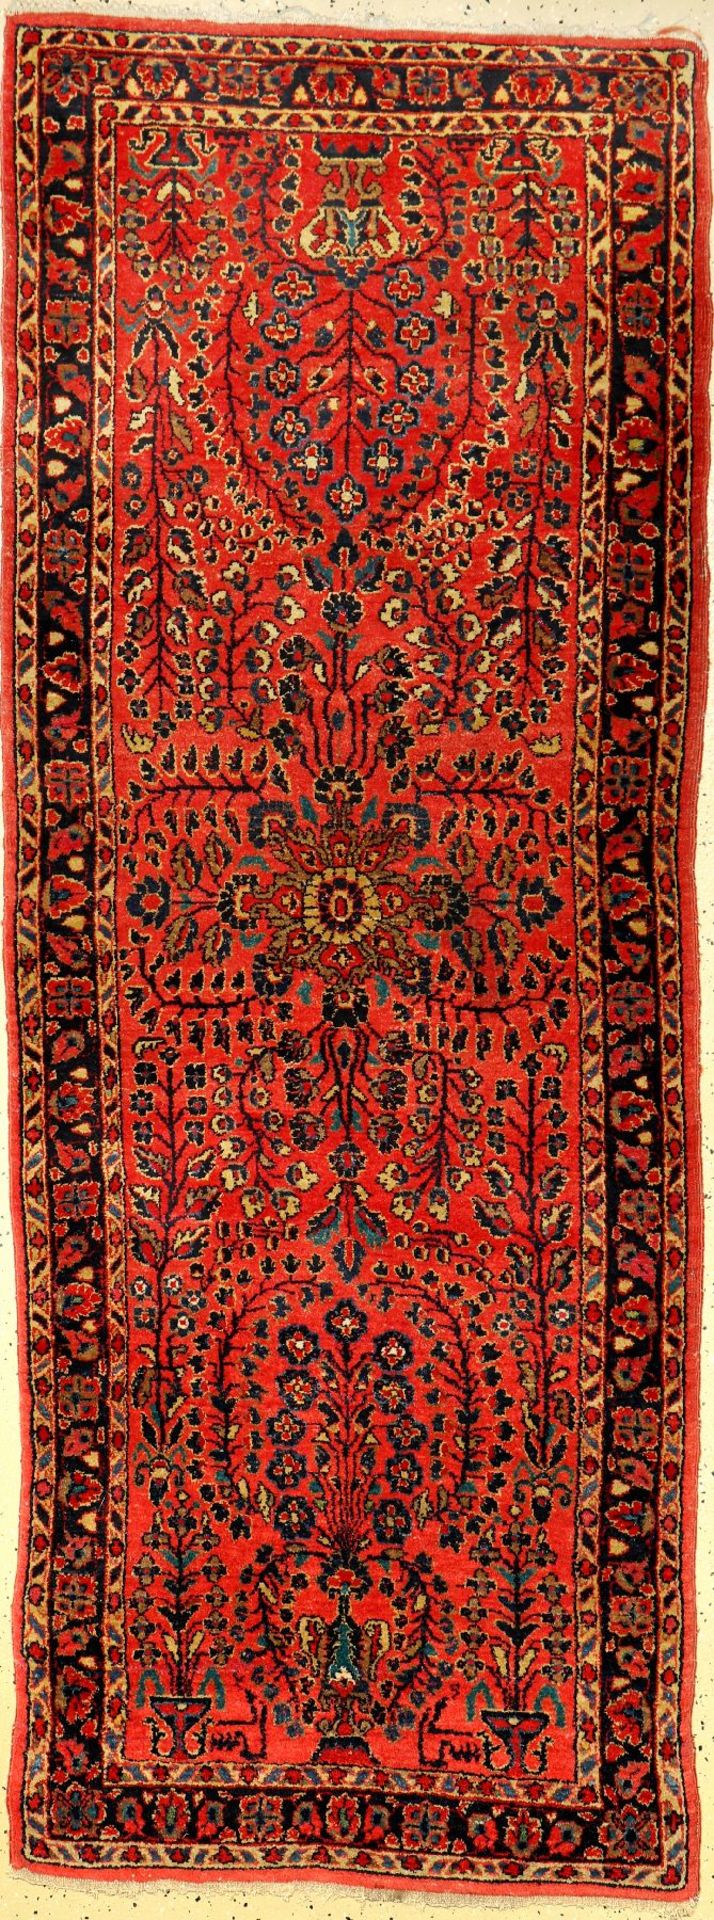 Sarogh US Re Import, Persien, um 1920, Wolle auf Baumwolle, ca. 208 x 80 cm, EHZ: 2-3Saruk US Re